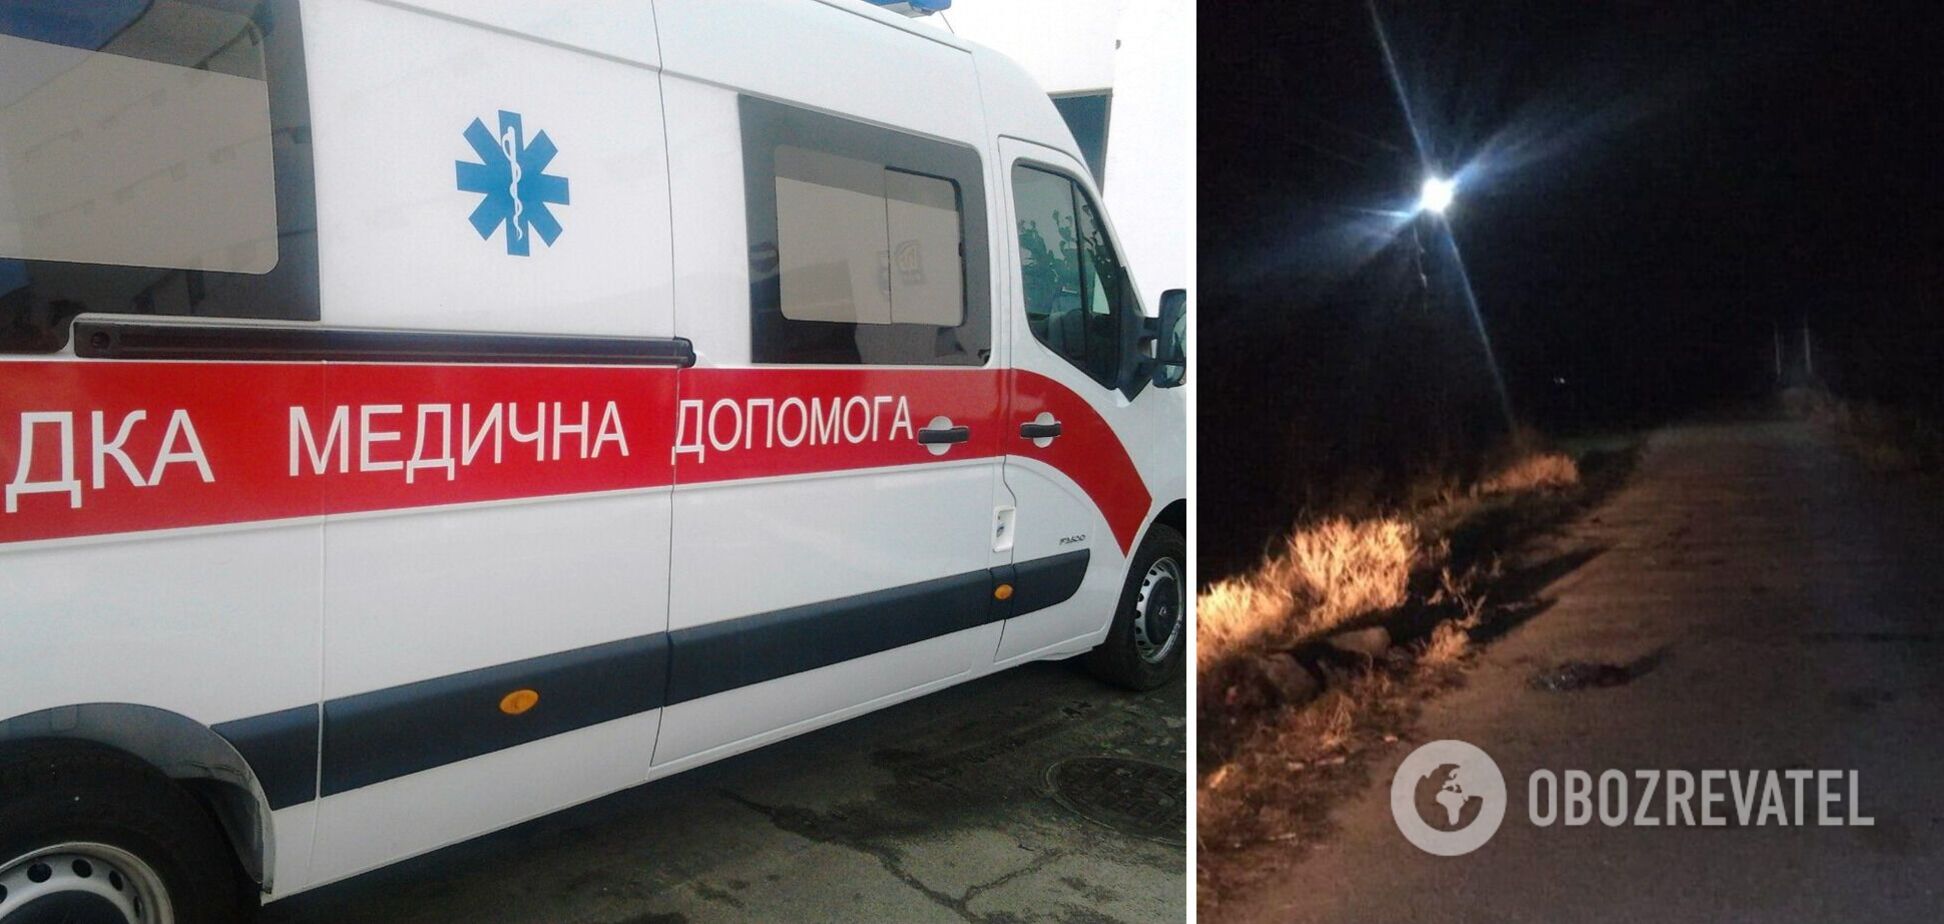 В Одесской области на дороге обнаружили мертвую женщину: выяснились детали трагедии. Фото